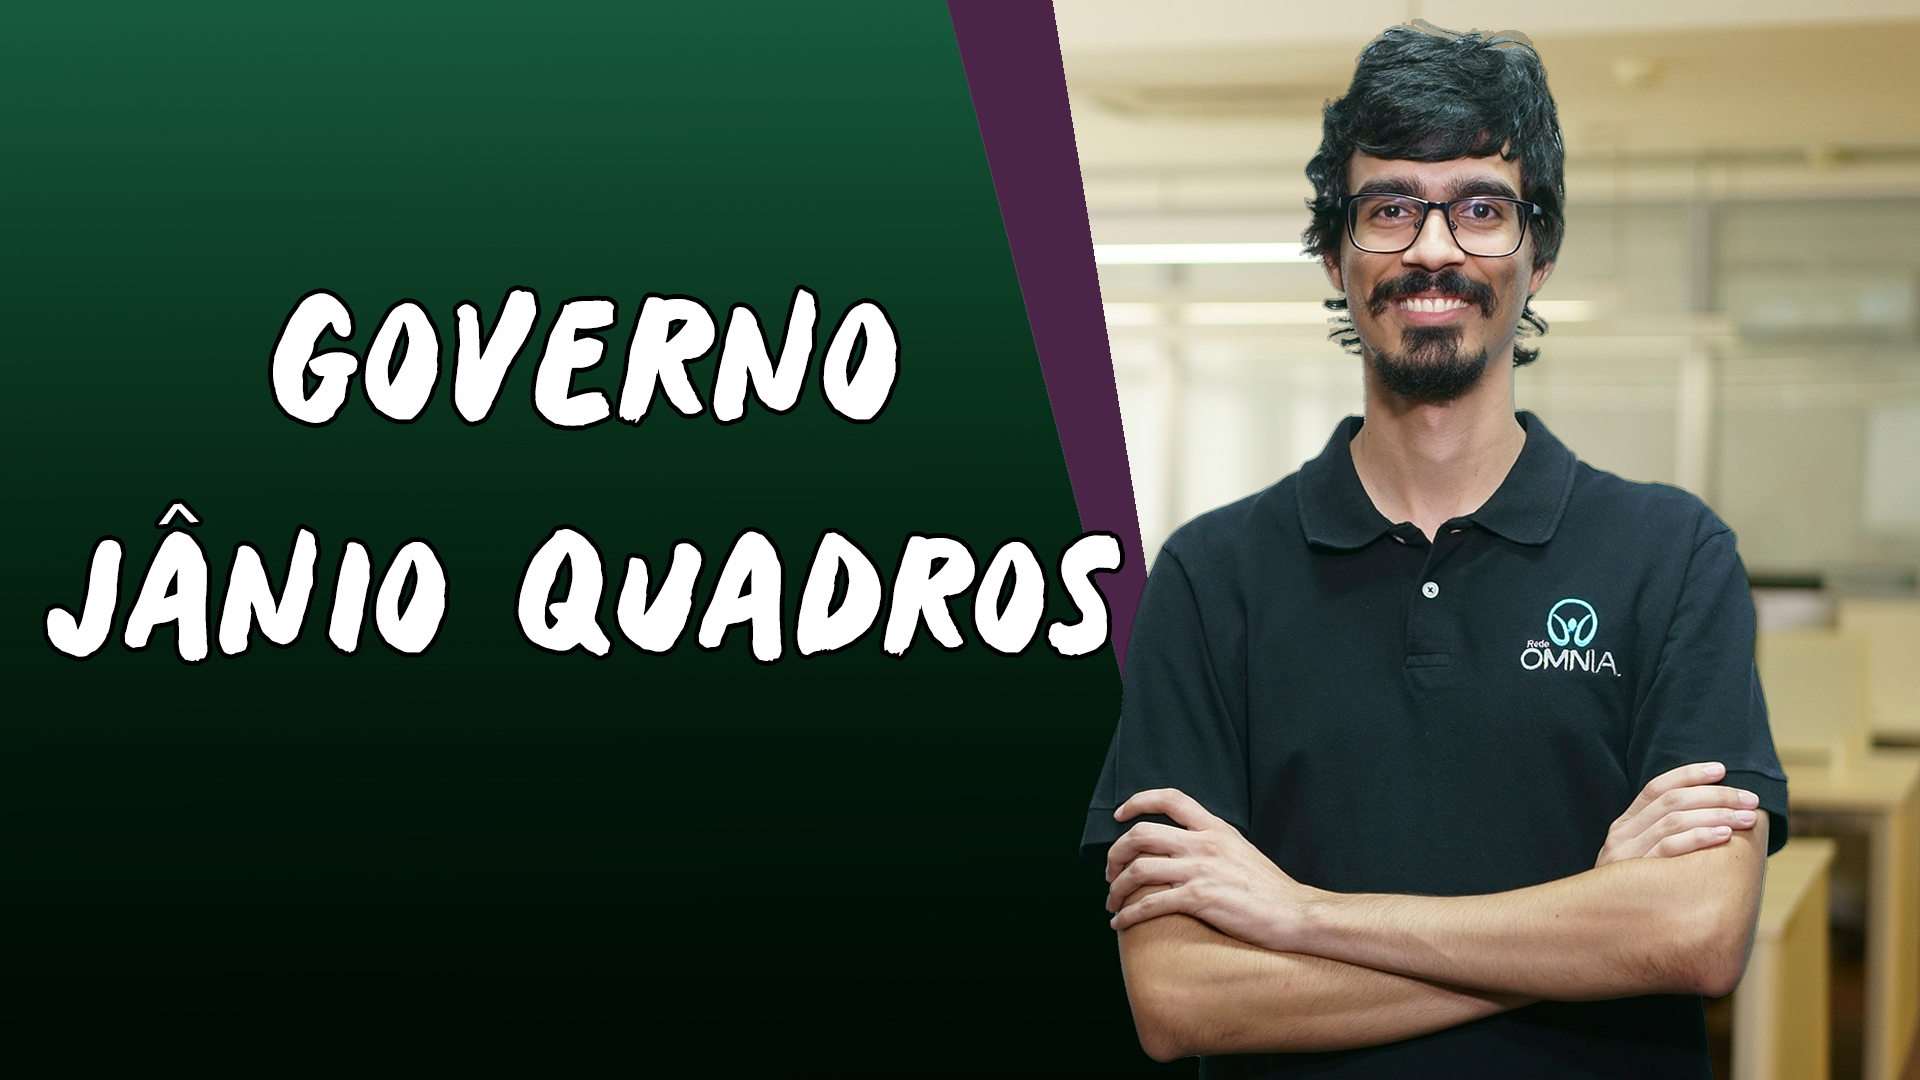 "Governo Jânio Quadros" escrito sobre fundo verde ao lado da imagem do professor